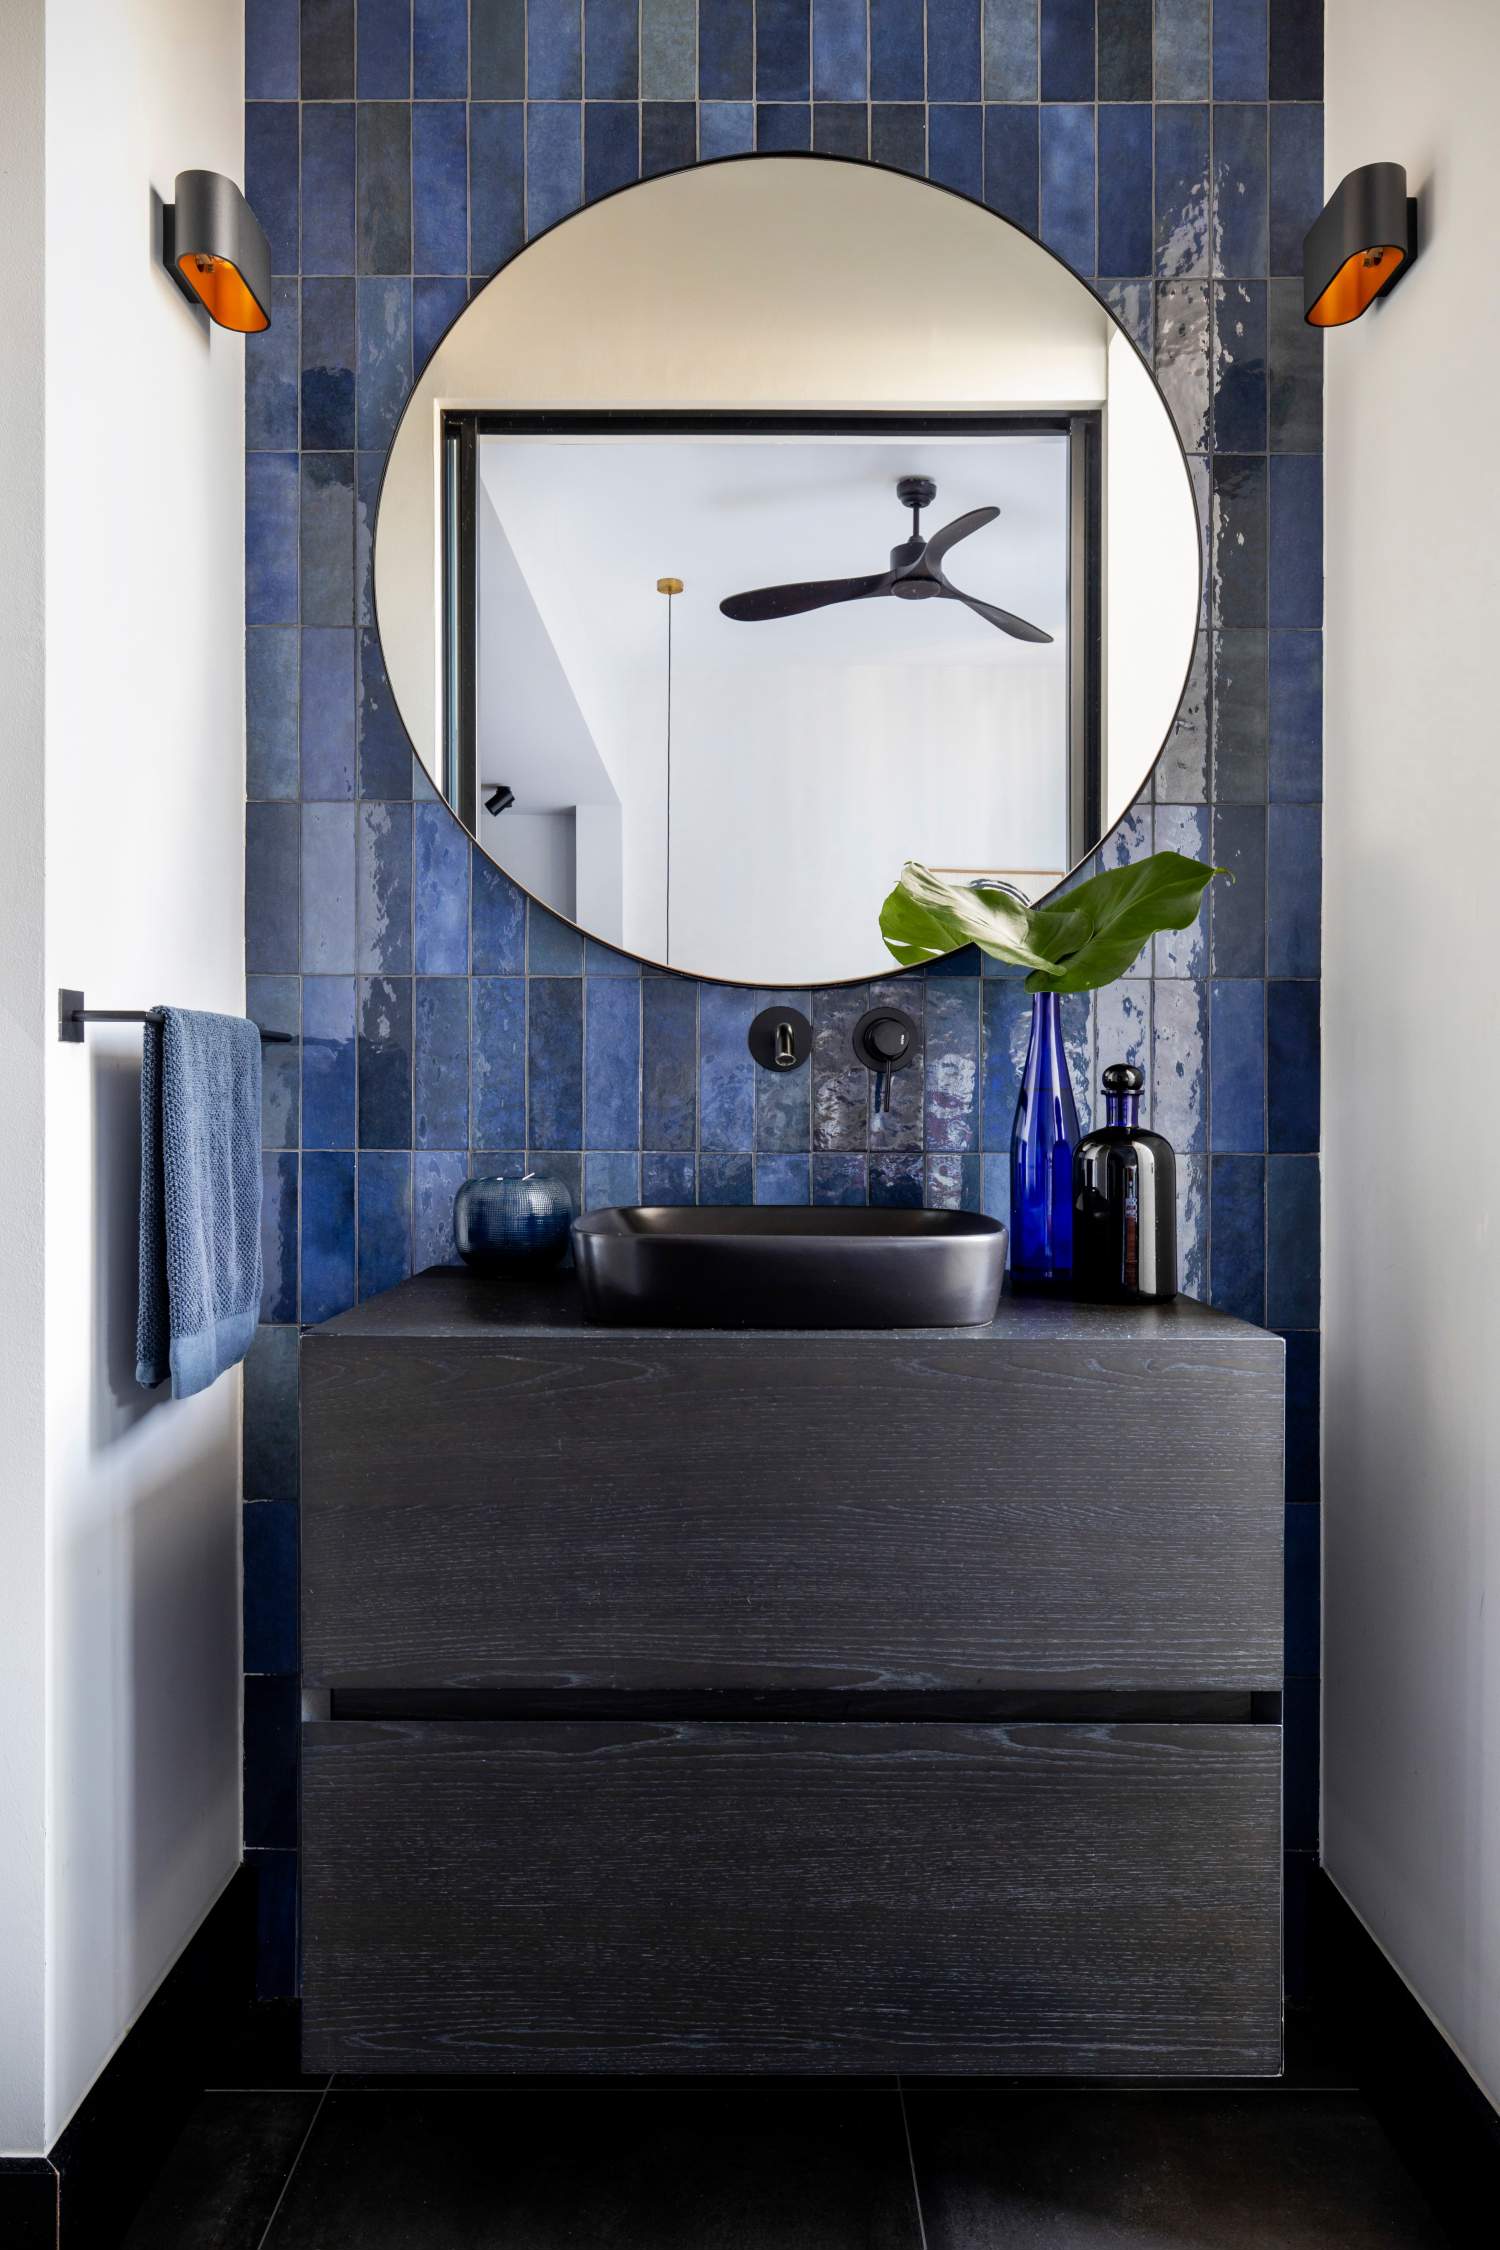 Un baño con carácter y personalidad en azul y negro.